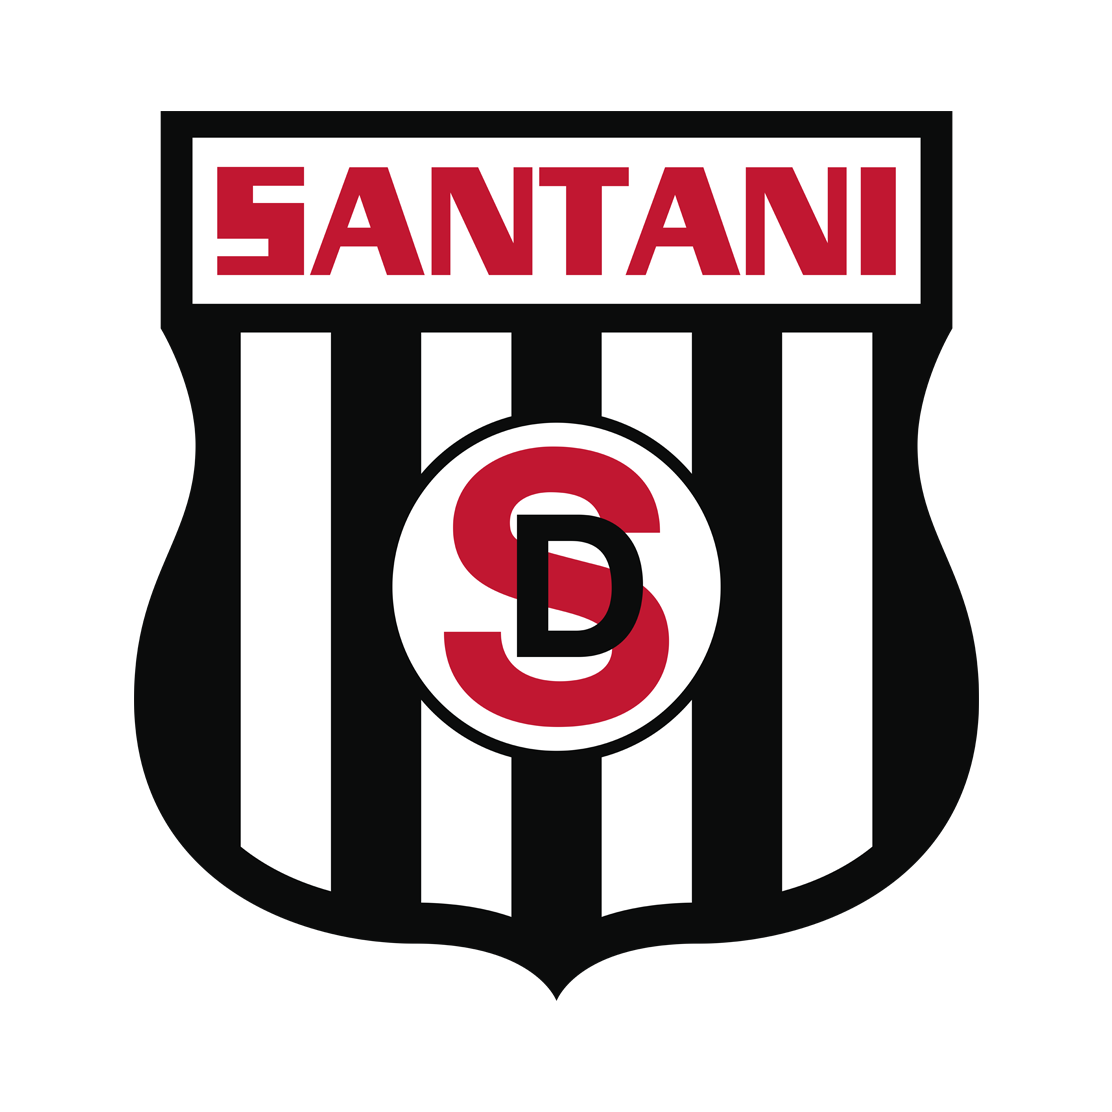 桑坦尼体育会队徽